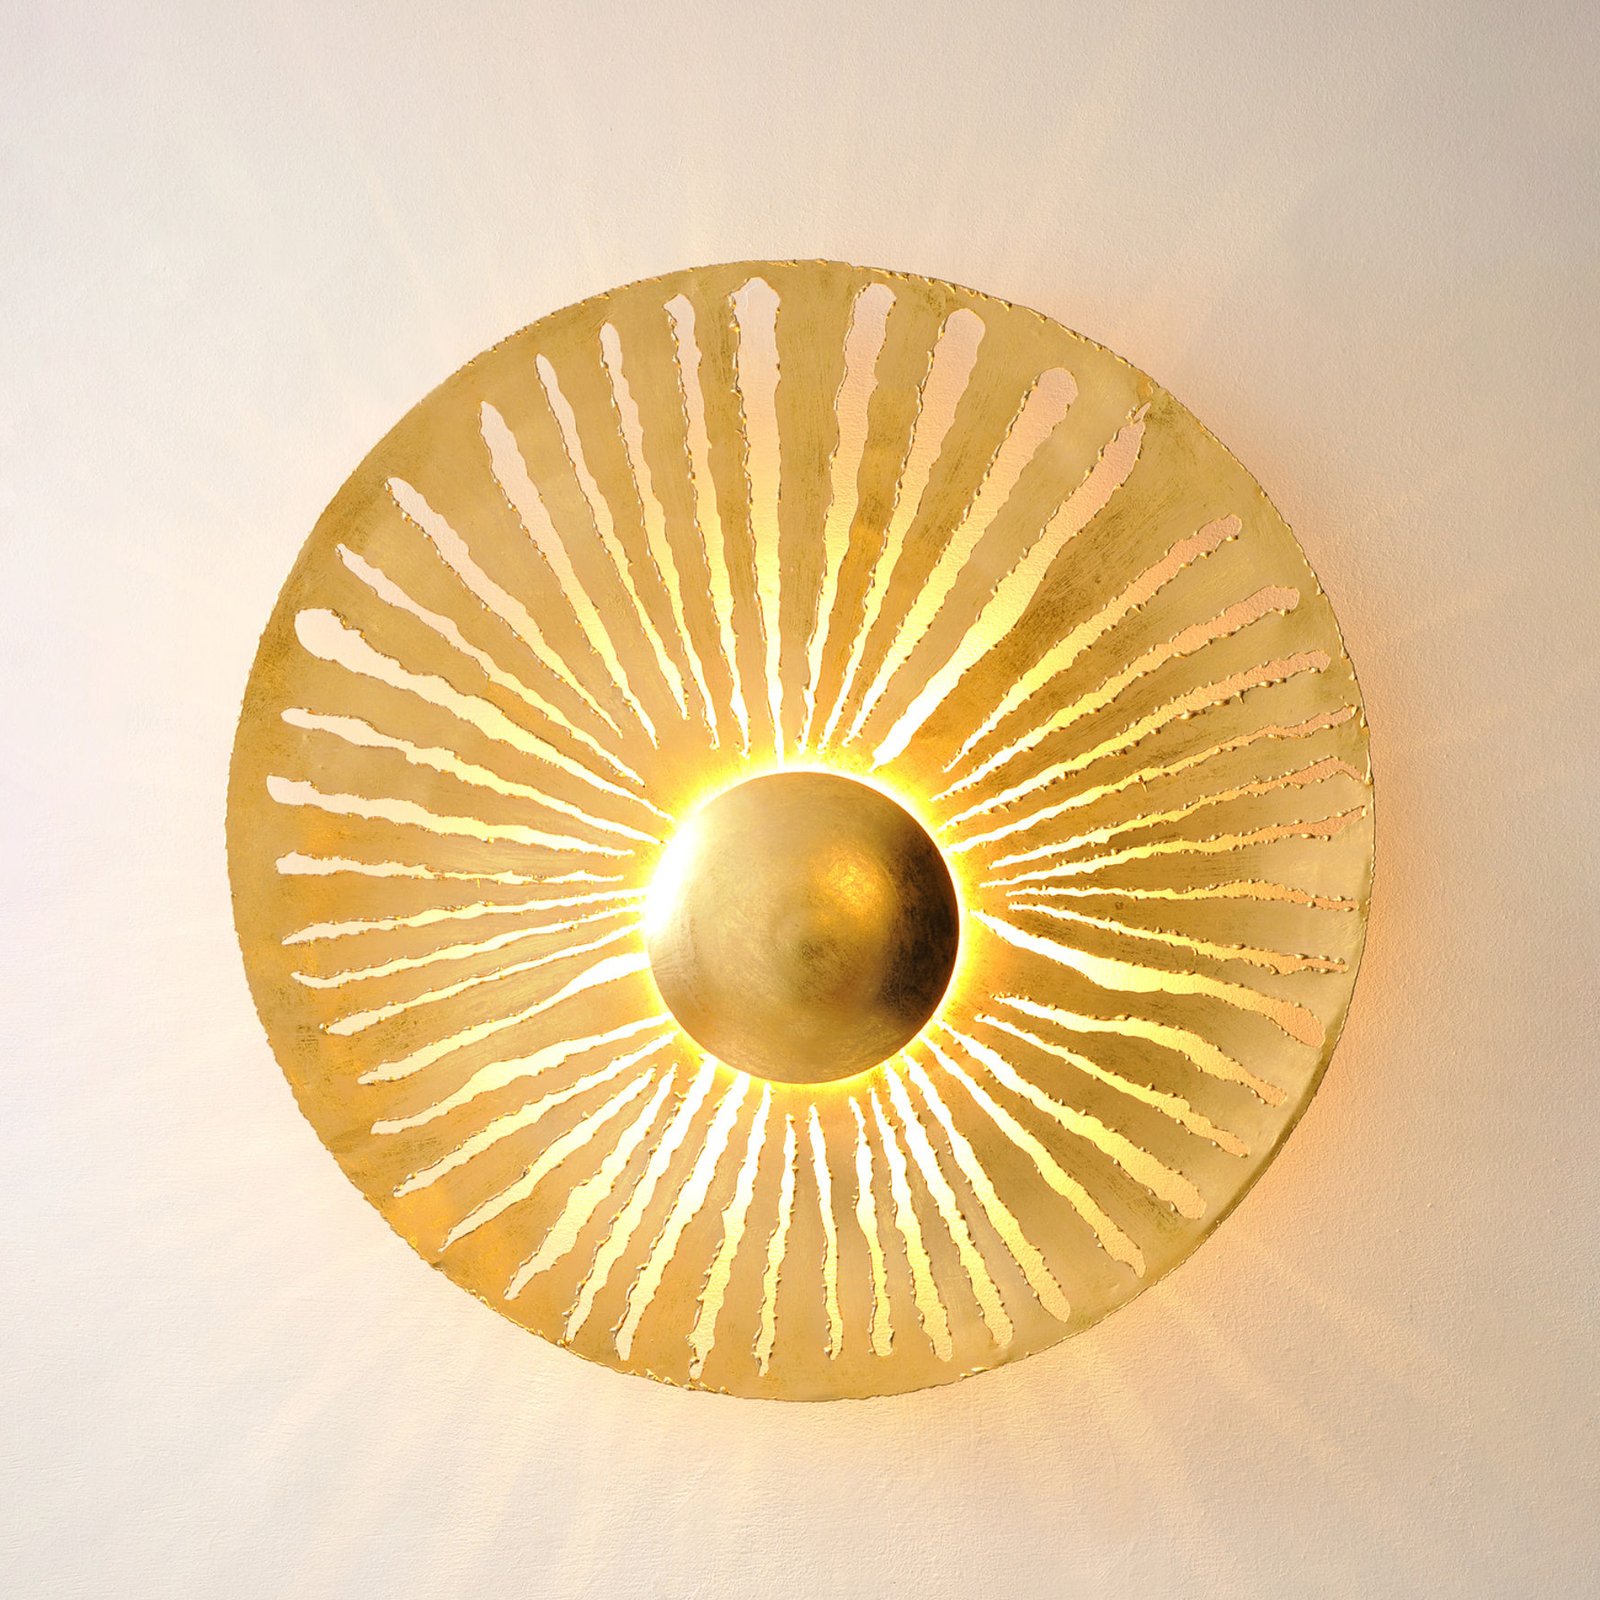 Pietro vägglampa, guldfärgad, Ø 71 cm, järn